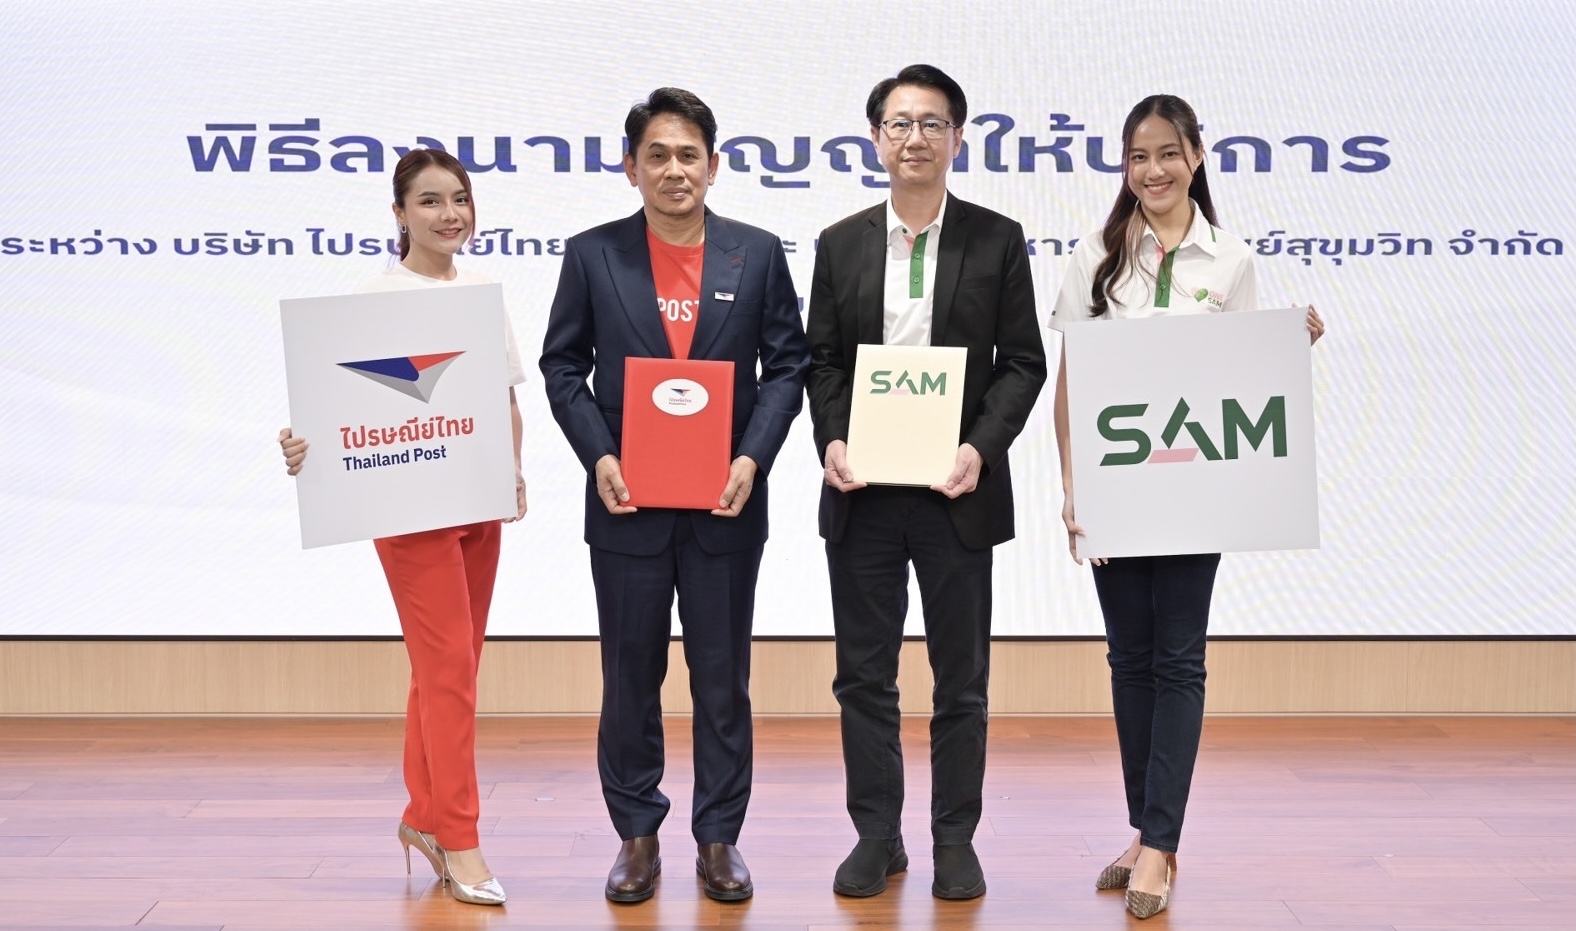 SAM ลงนามสัญญาว่าจ้างไปรษณีย์ไทย สำรวจทรัพย์ NPAเพิ่มประสิทธิภาพการบริหารจัดการทรัพย์สินทั่วประเทศ